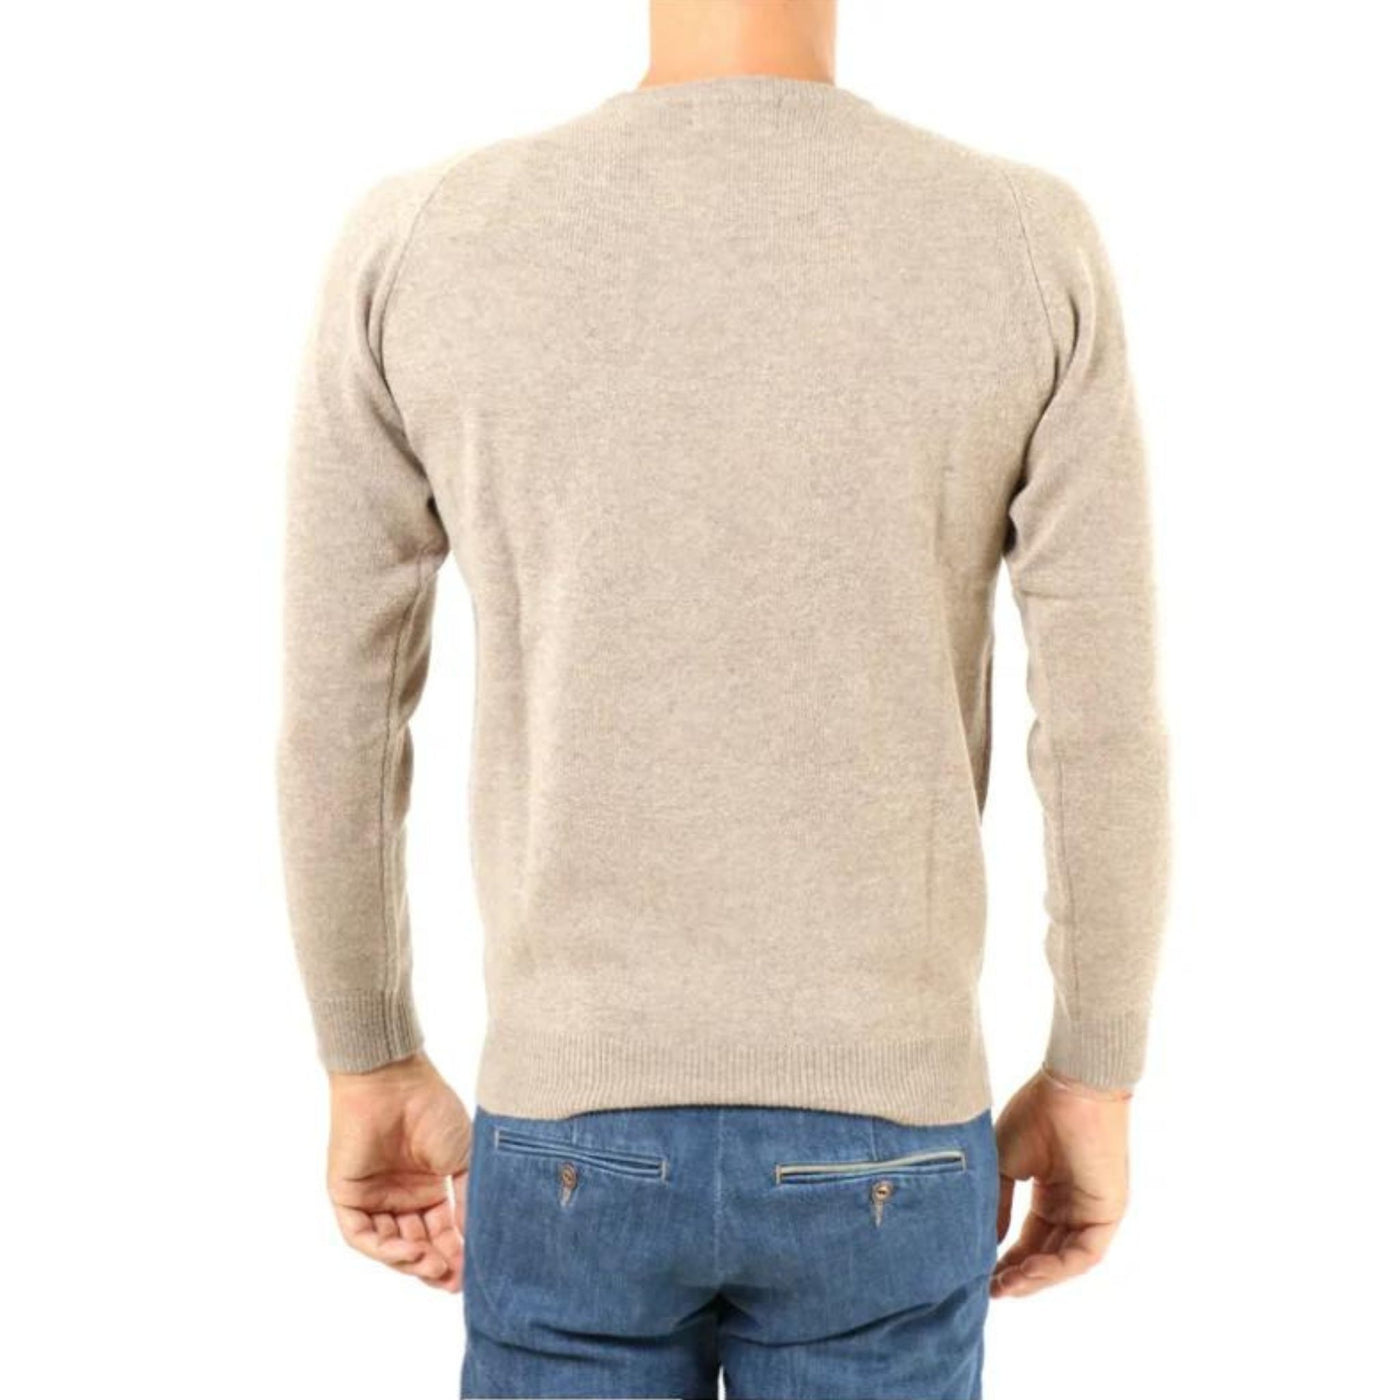 Men's sweater in 100% wool